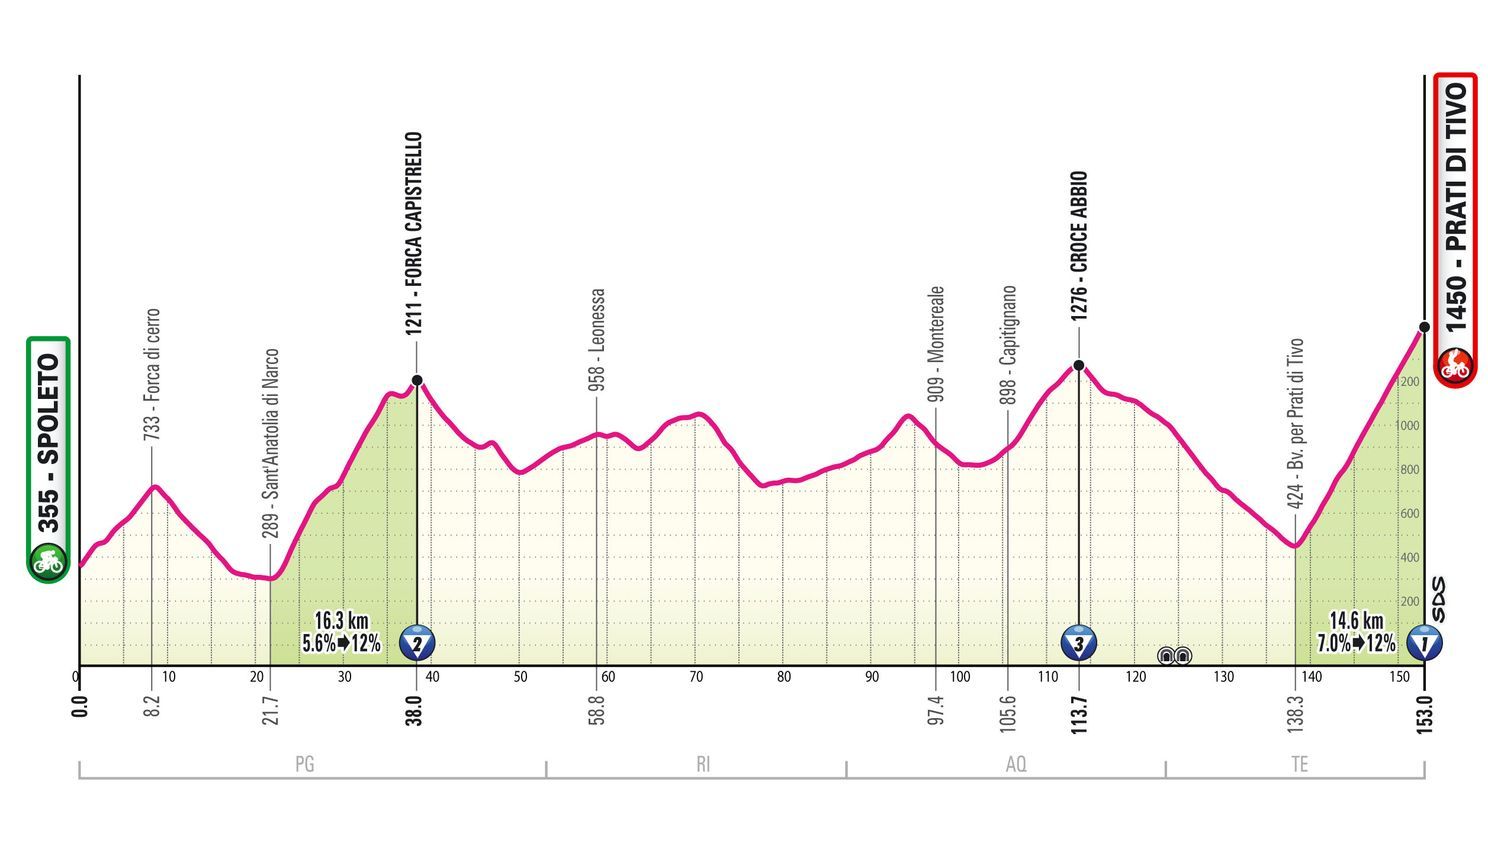 Etappe 8 Giro d'Italia